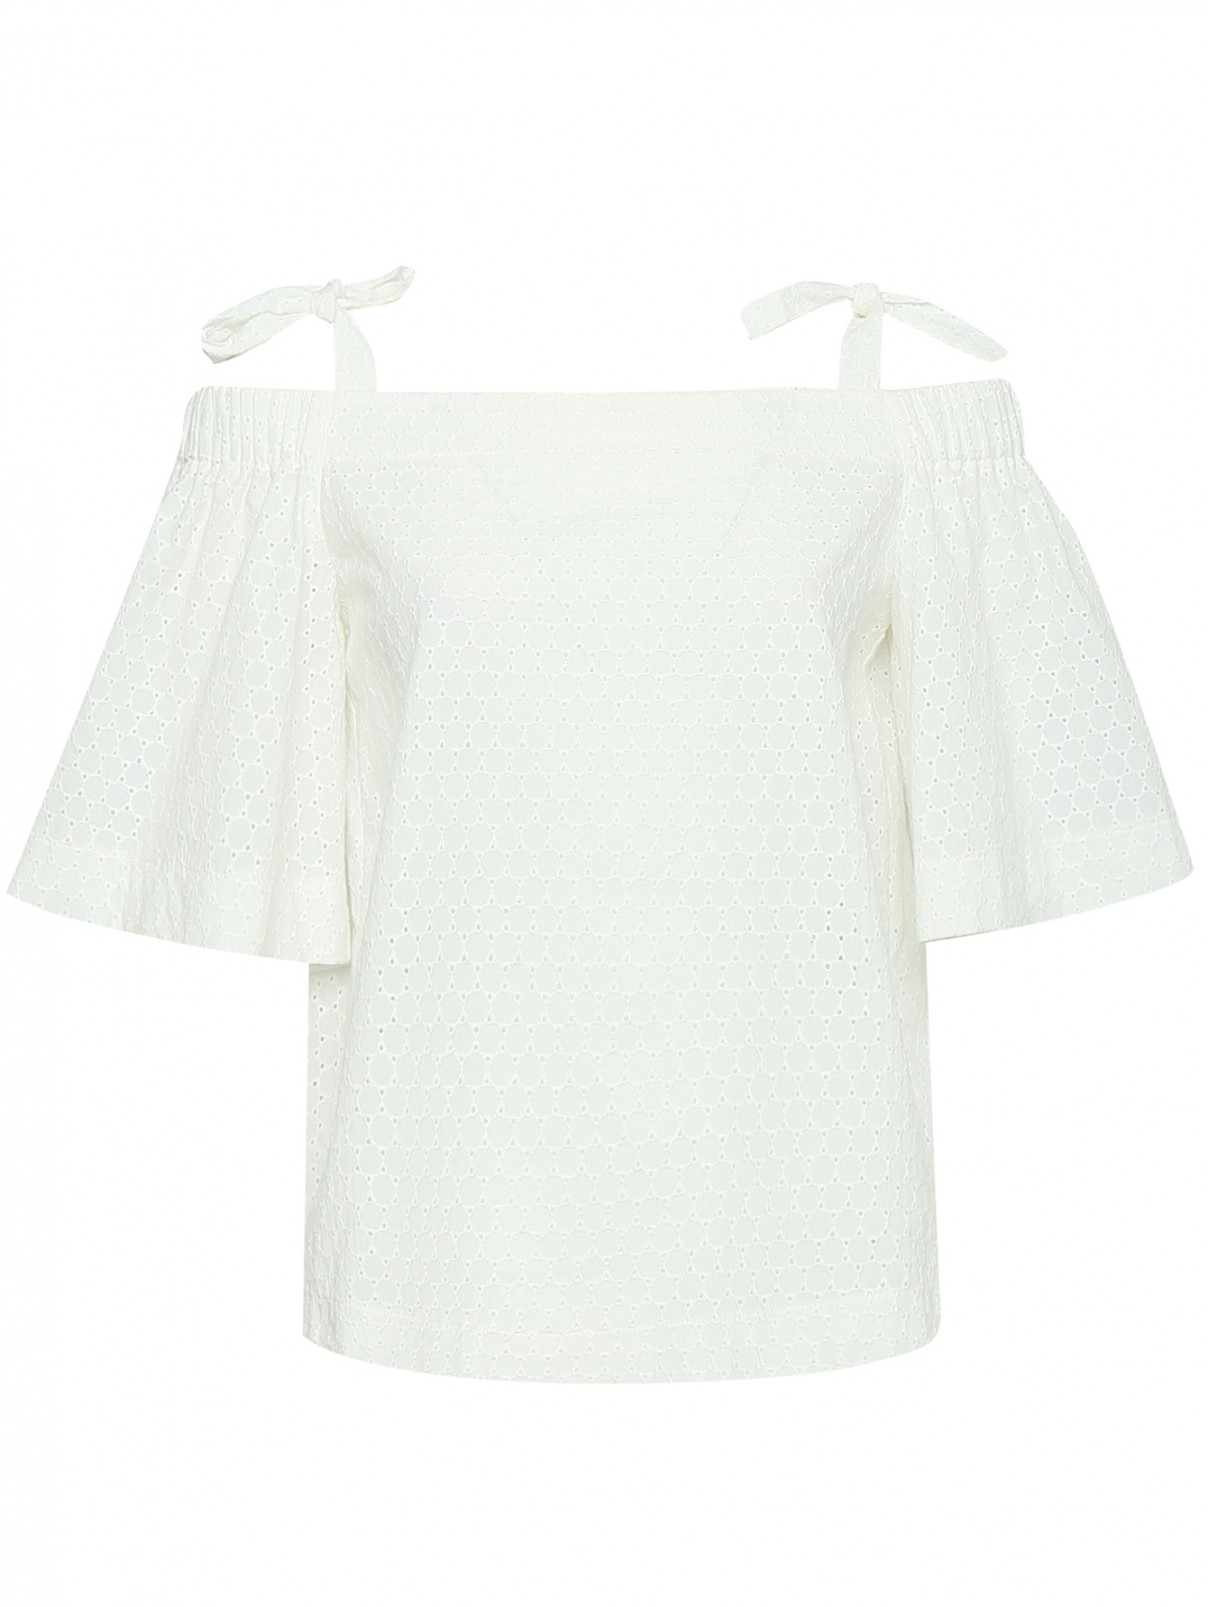 Блуза из хлопка с открытыми плечами Luisa Spagnoli  –  Общий вид  – Цвет:  Белый